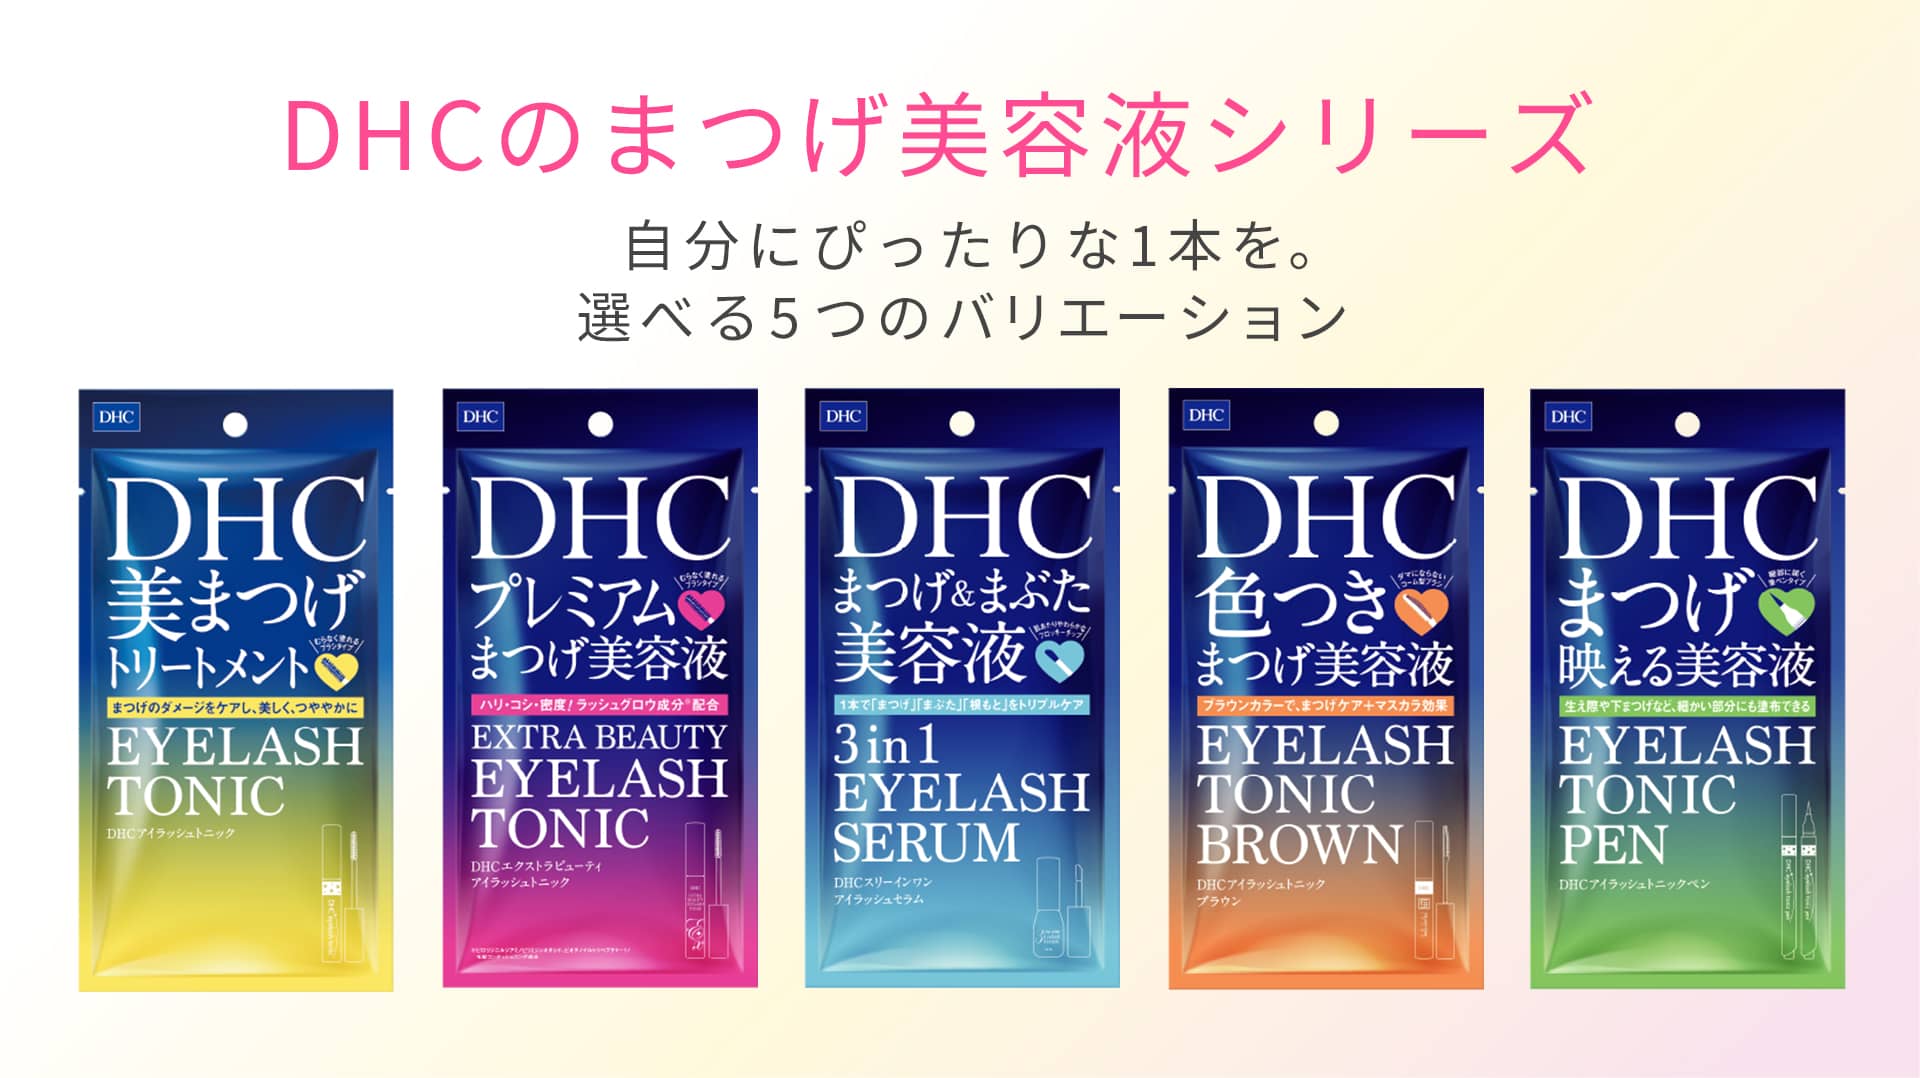 429円 販売期間 限定のお得なタイムセール DHC アイラッシュトニック ブラウン 6g 色つきまつげ美容液